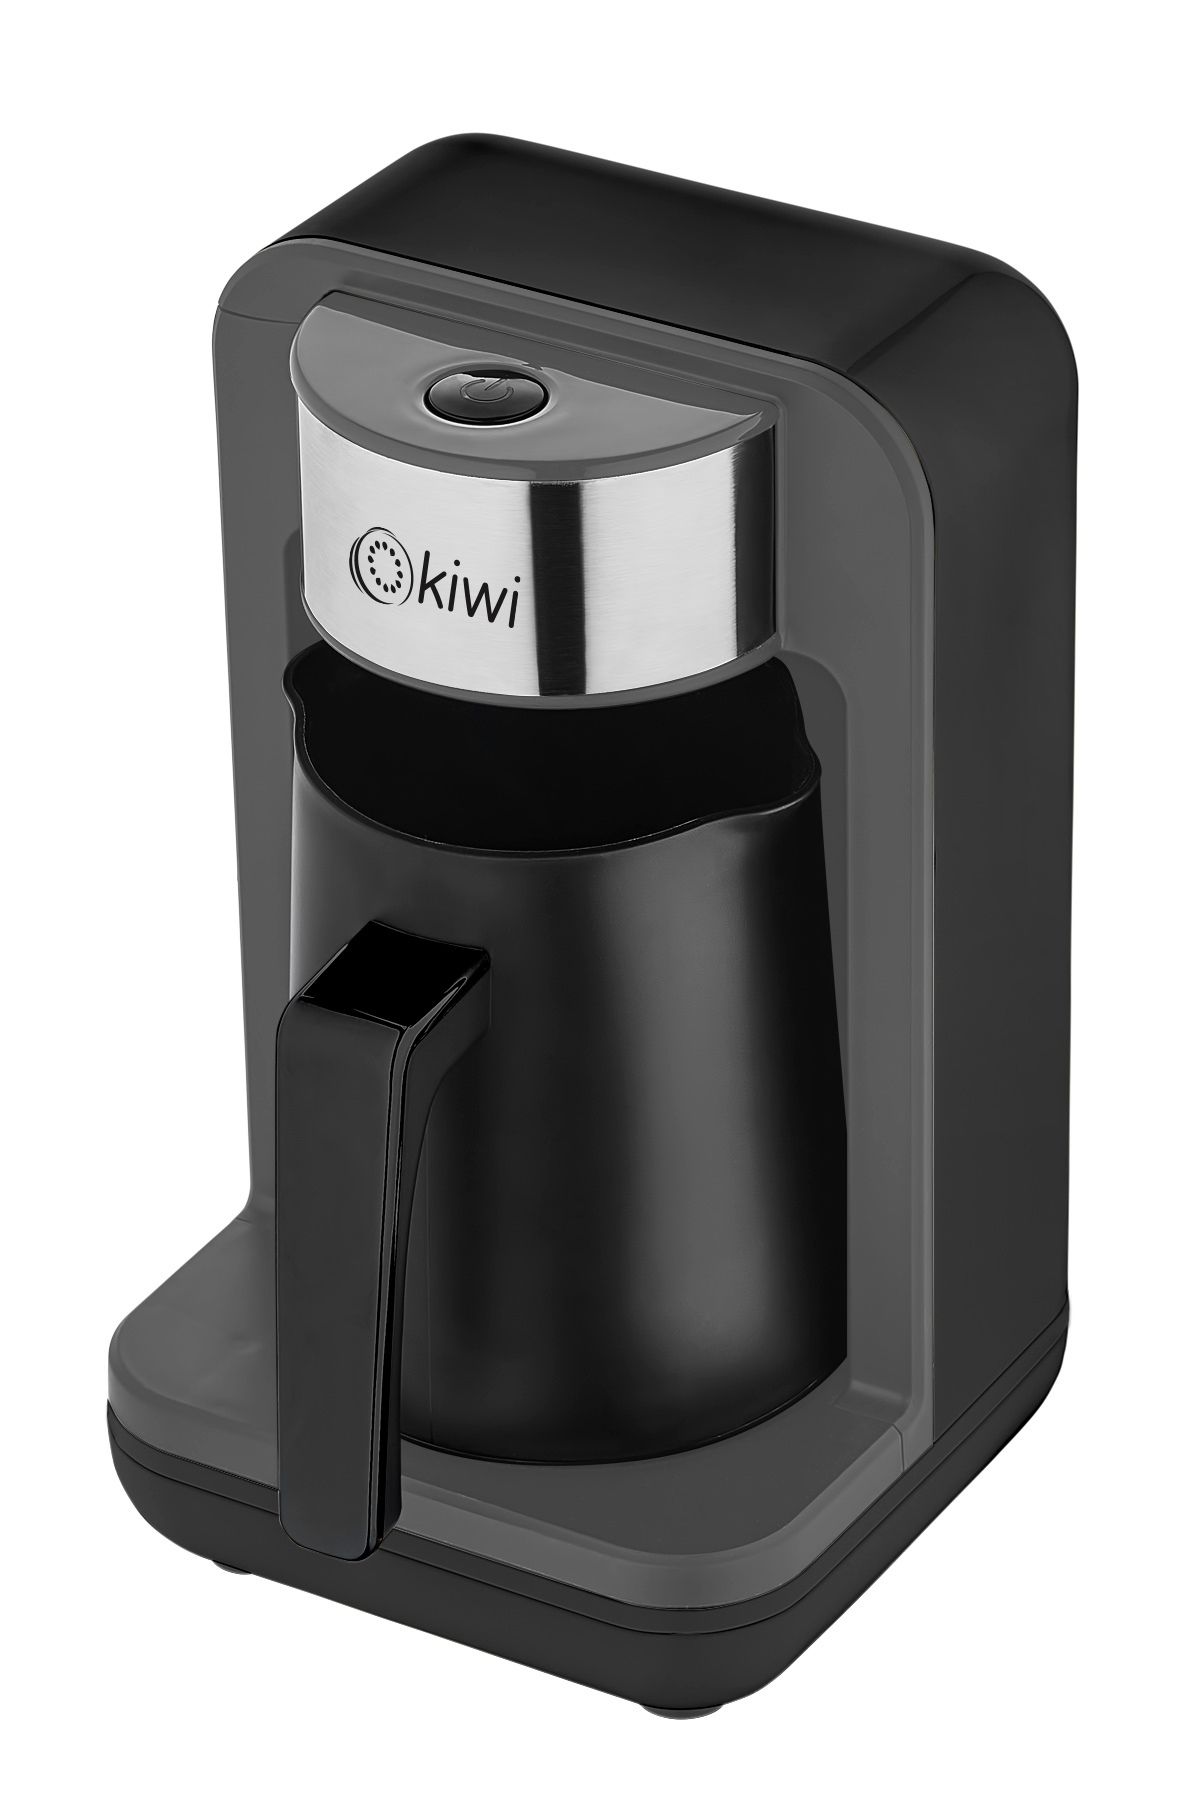 Kiwi Otomatik T Rk Kahve Makinesi Fiyat Yorumlar Trendyol